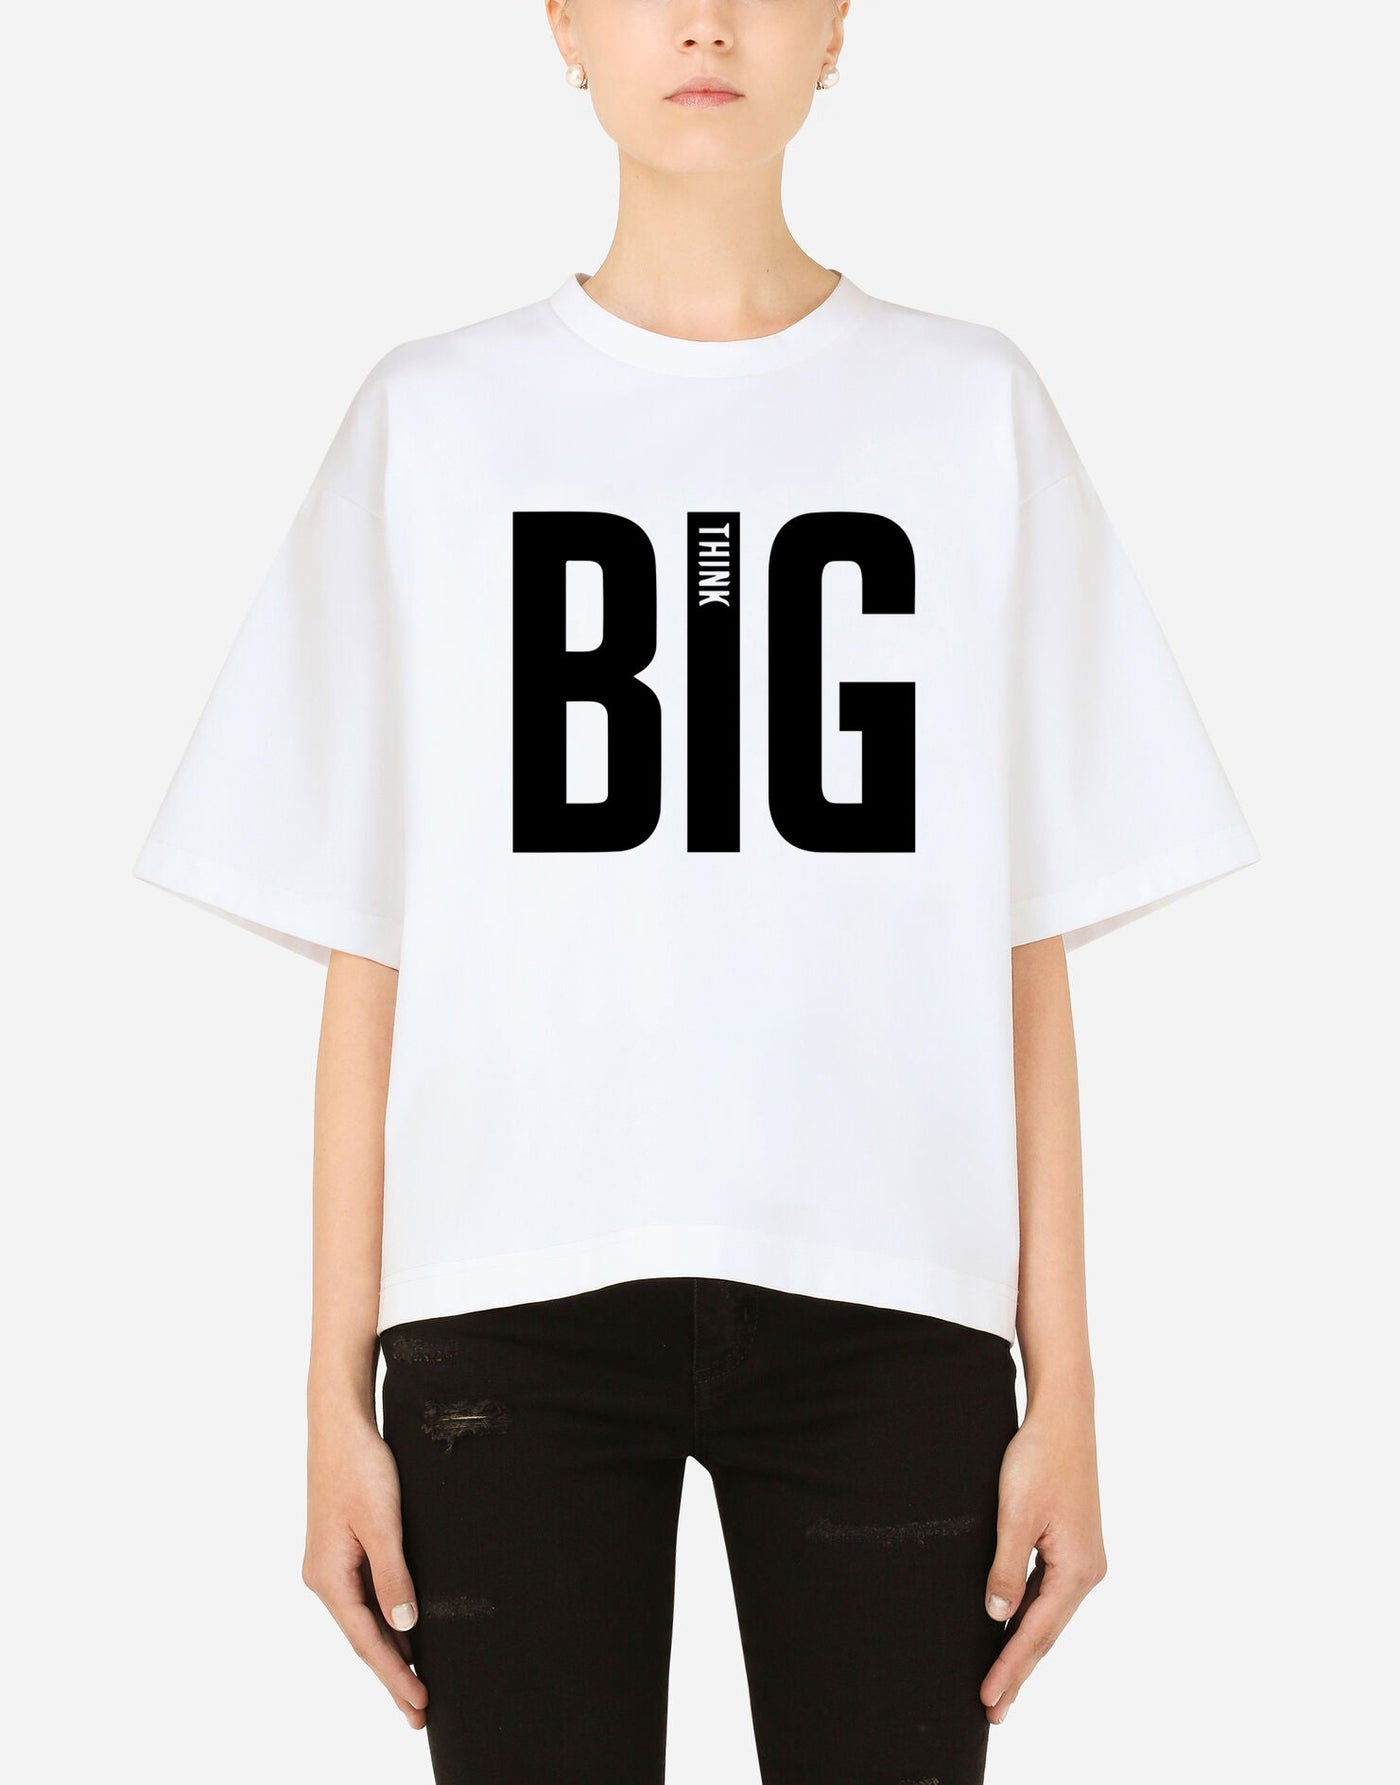 Big Think Text T-shirt - EUG FASHION EugFashion 